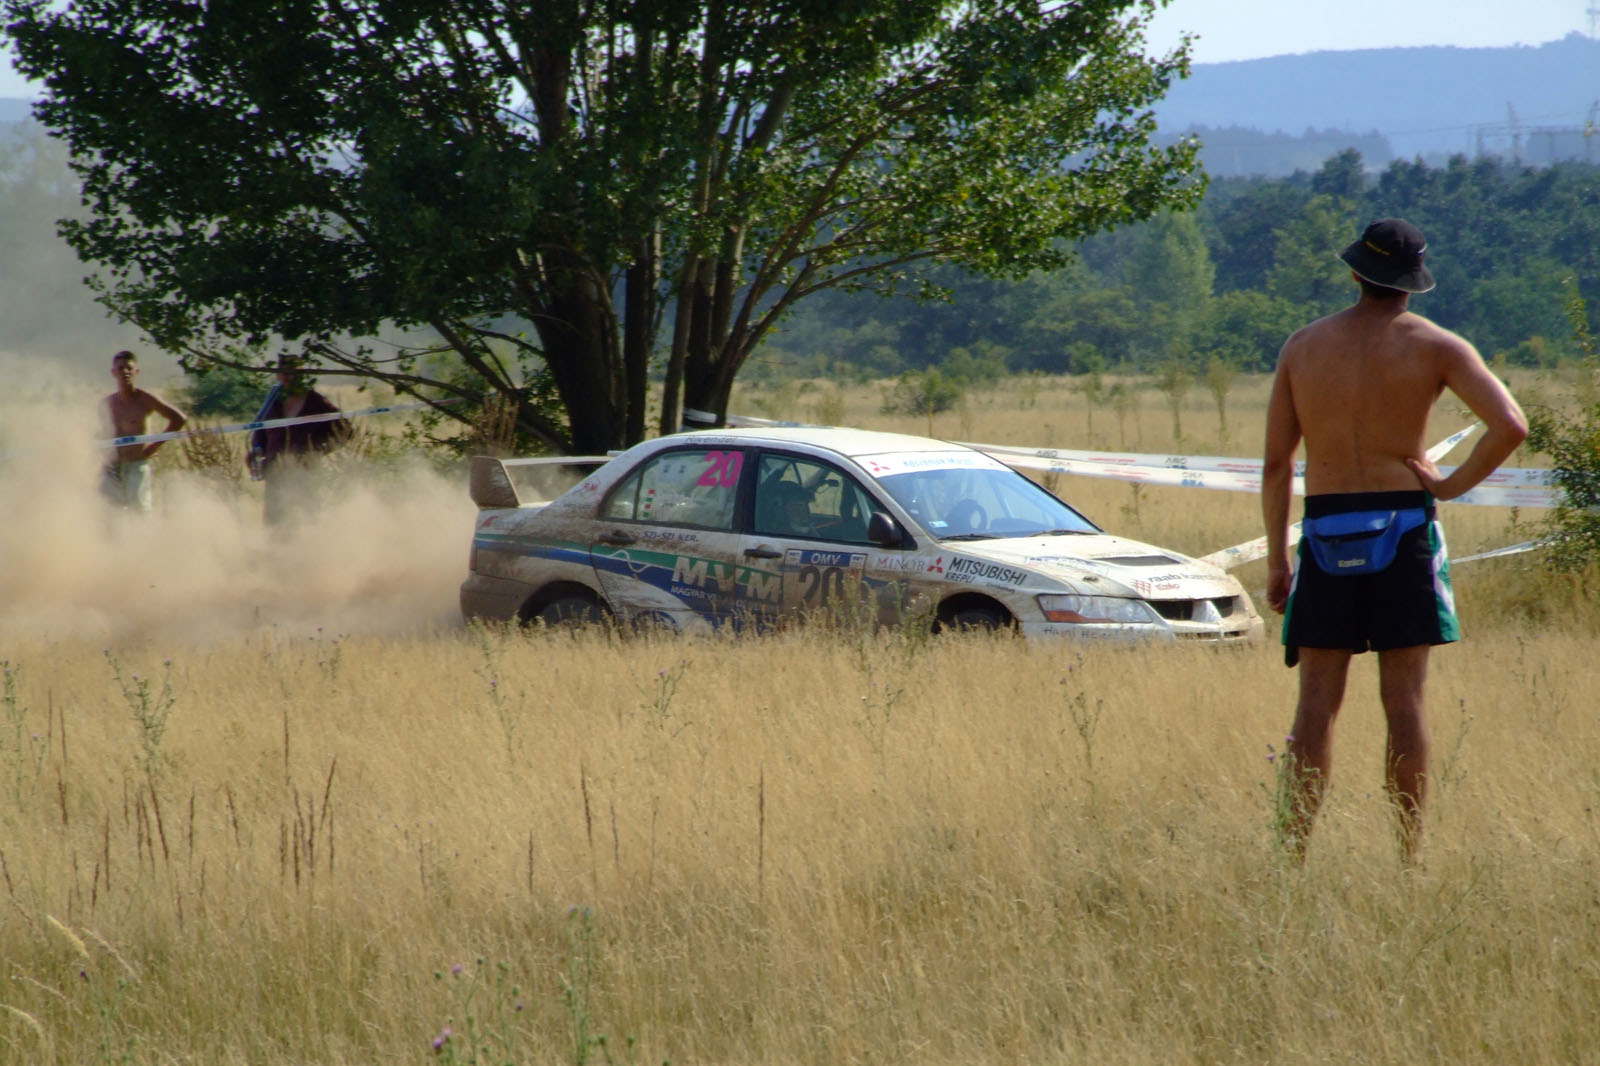 Veszprém Rally 2006 (DSCF4536)